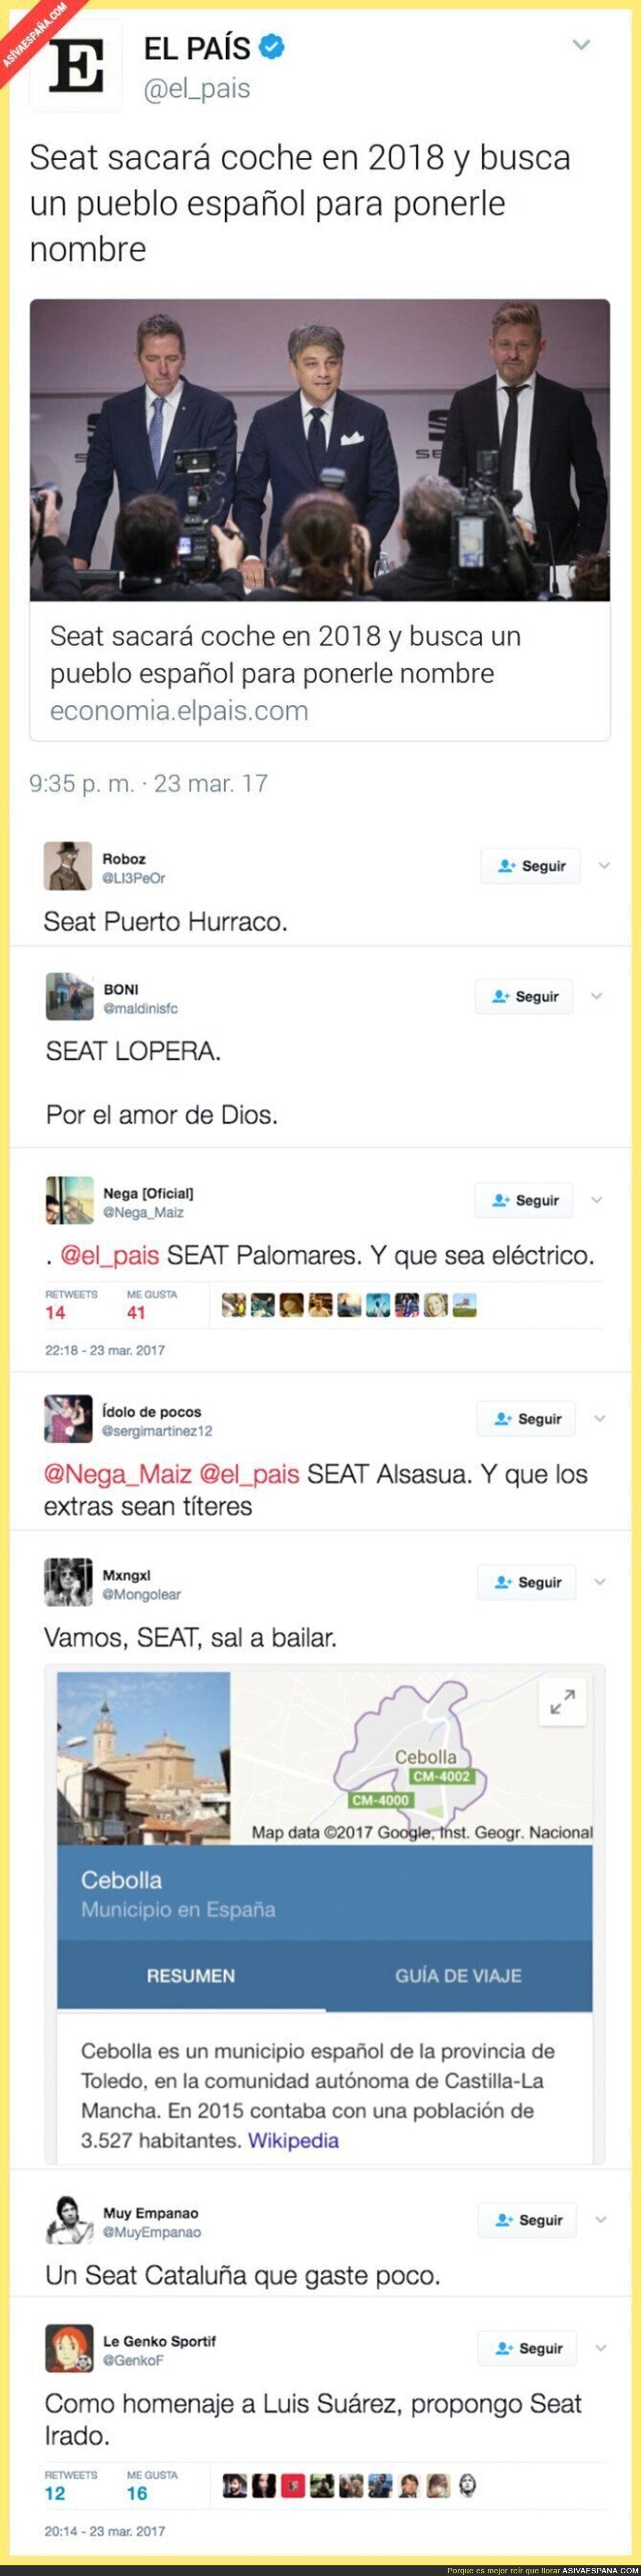 SEAT sacará coche en 2018 con nombre de un pueblo de España y Twitter ayuda aportando ideas genial